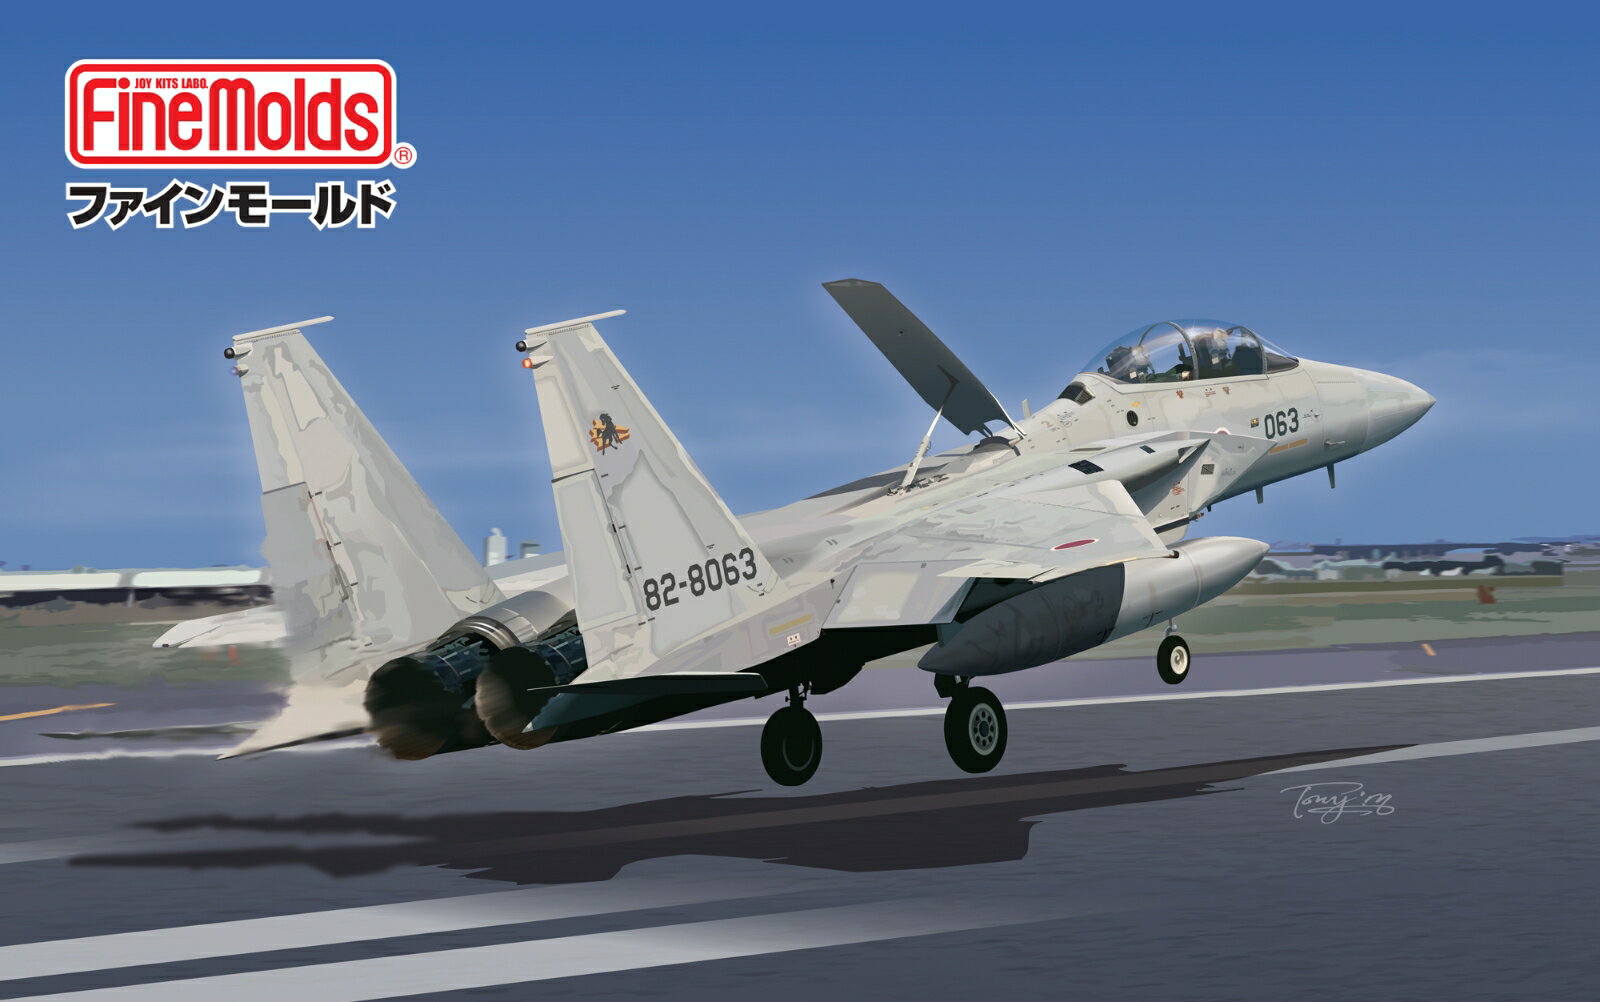 航空自衛隊が、パイロットのF-15J戦闘機（単座型）の慣熟訓練や機種転換用訓練用に導入した機体がF-15DJ （複座型）です。
当初の12機は米国から輸入されましたが、ノックダウン生産後の国内生産分を合わせて計48機が導入されます。
その多くは、宮崎県の新田原基地で新人イーグルドライバーを養成する、教育飛行隊である第23飛行隊に配備されていますが、他の全てのF-15飛行隊にも数機ずつが配備されています。
複座型ゆえ練習機と思われがちですが単座のJ型と同様の戦闘力を備えており、有事に対応できる能力を備えています。
キットでは、第23飛行隊と第304飛行隊のマーキングをセットしました。
また複座となるコクピット等を新金型にて再現しました。【対象年齢】：